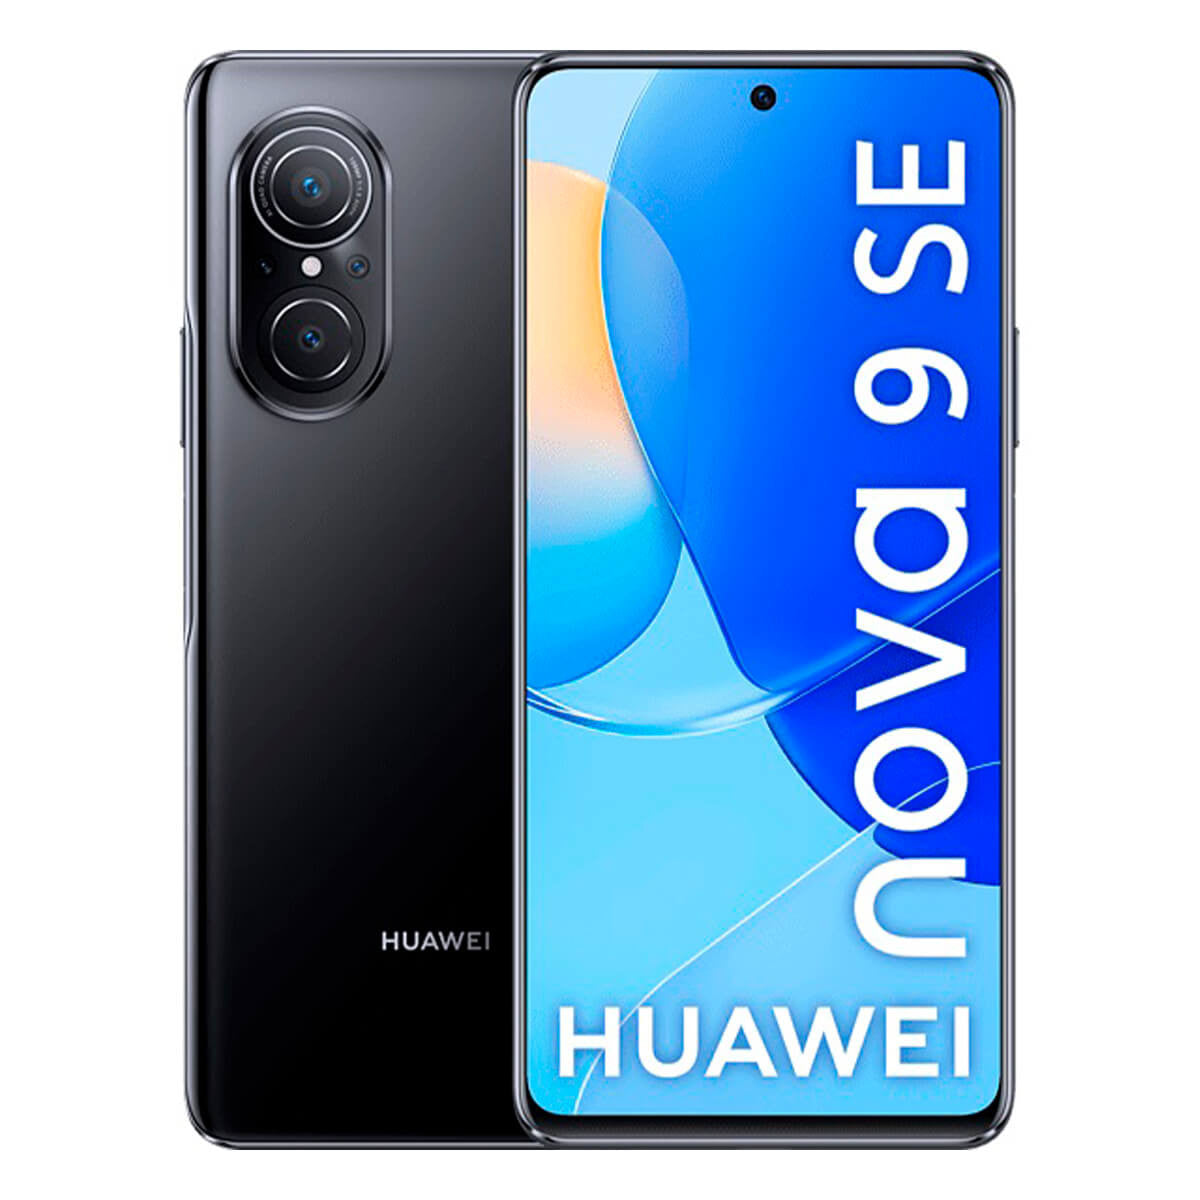 Huawei Nova 9 SE 4G 8GB/128GB Black (Midnight Black) Dual SIM Smartphone | Huawei